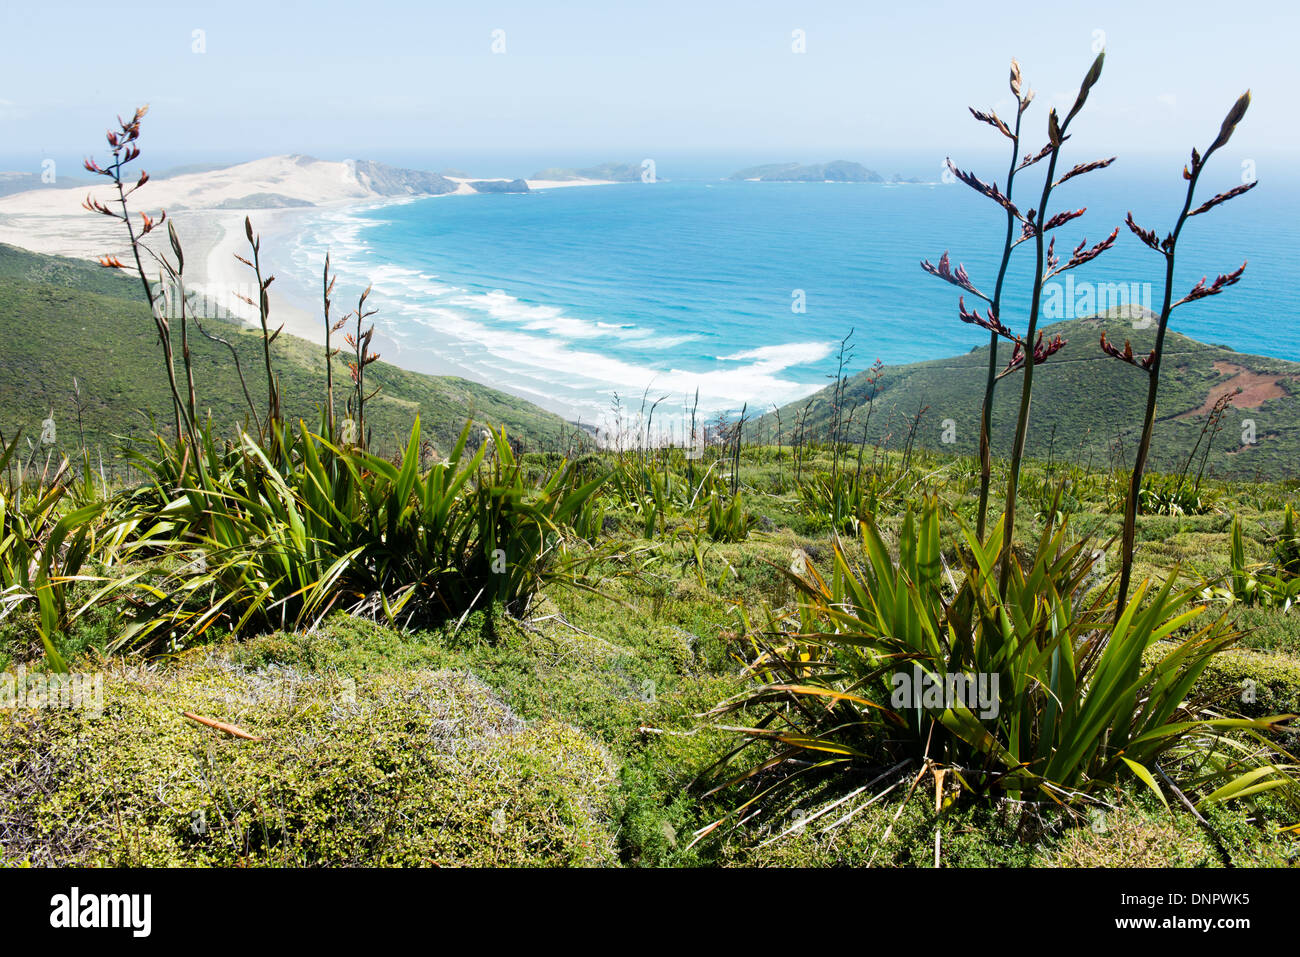 Vue le long Te Werahi Beach et Cape Maria Van Diemen, qui se trouve à 45 minutes de marche de Cape Reinga, Nouvelle-Zélande Banque D'Images